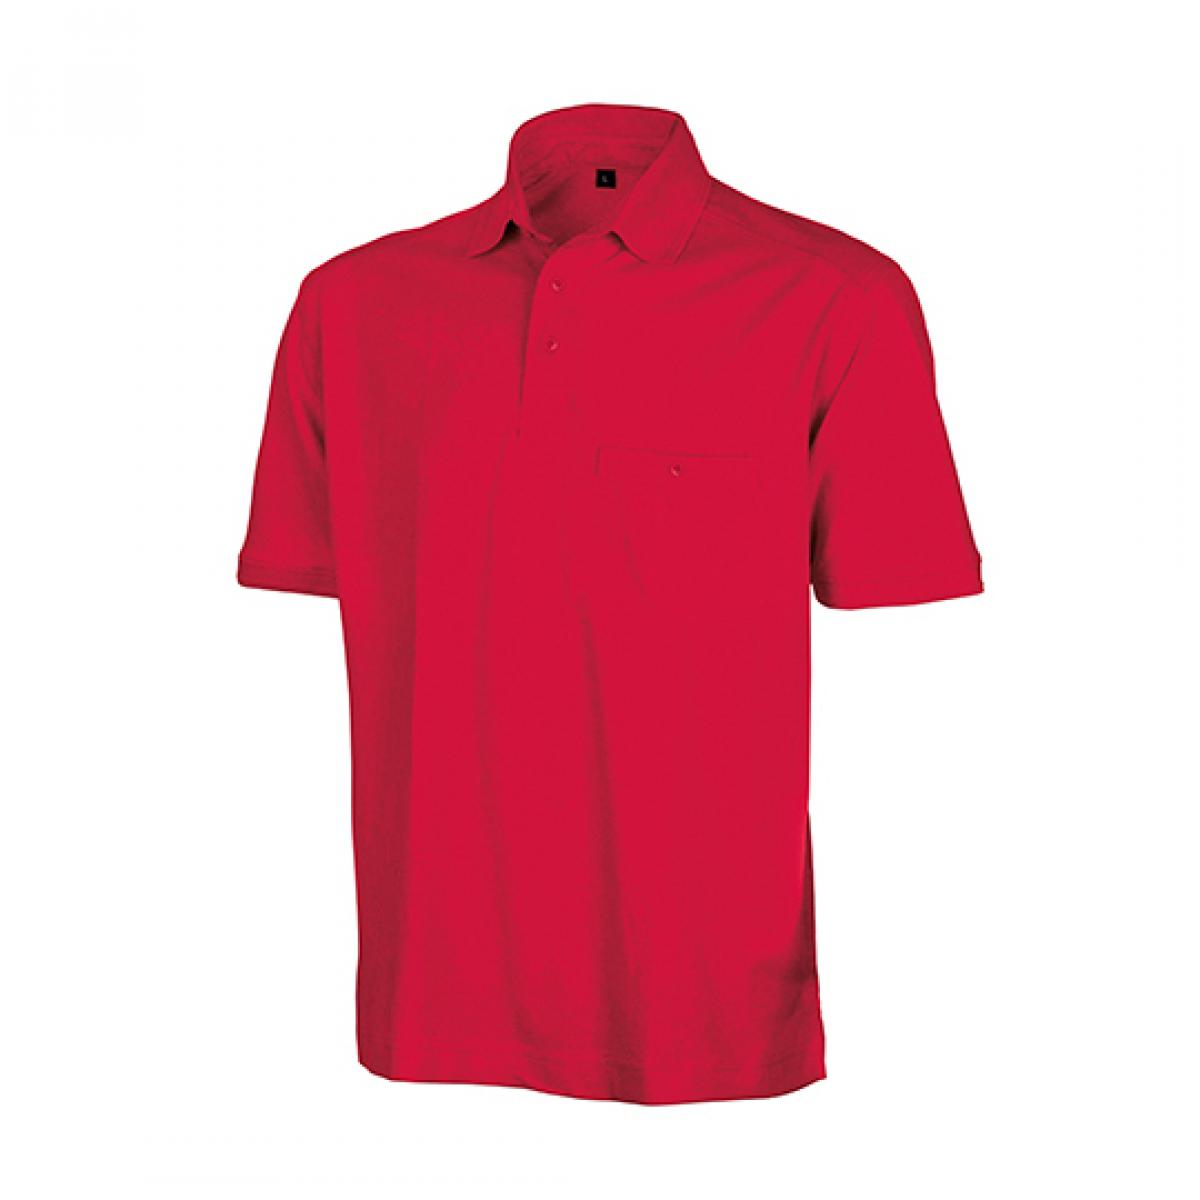 Hersteller: Result WORK-GUARD Herstellernummer: R312X Artikelbezeichnung: Herren Apex Polo Shirt / Strapazierfähig aus Mischgewebe Farbe: Red